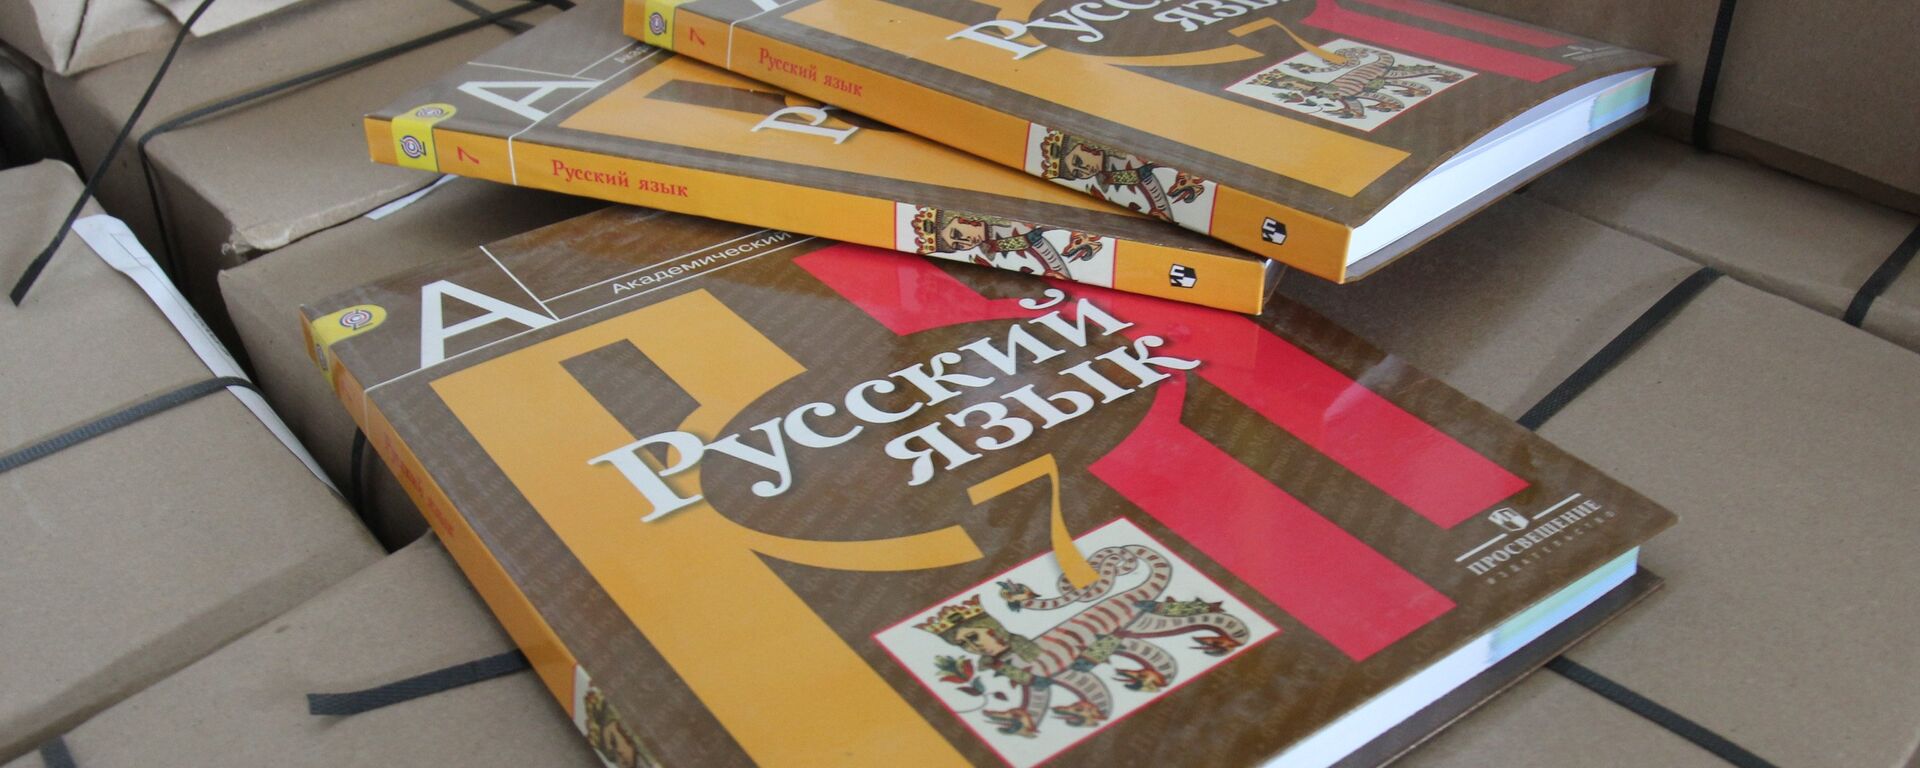 Учебники по русскому языку - Sputnik Молдова, 1920, 02.08.2021